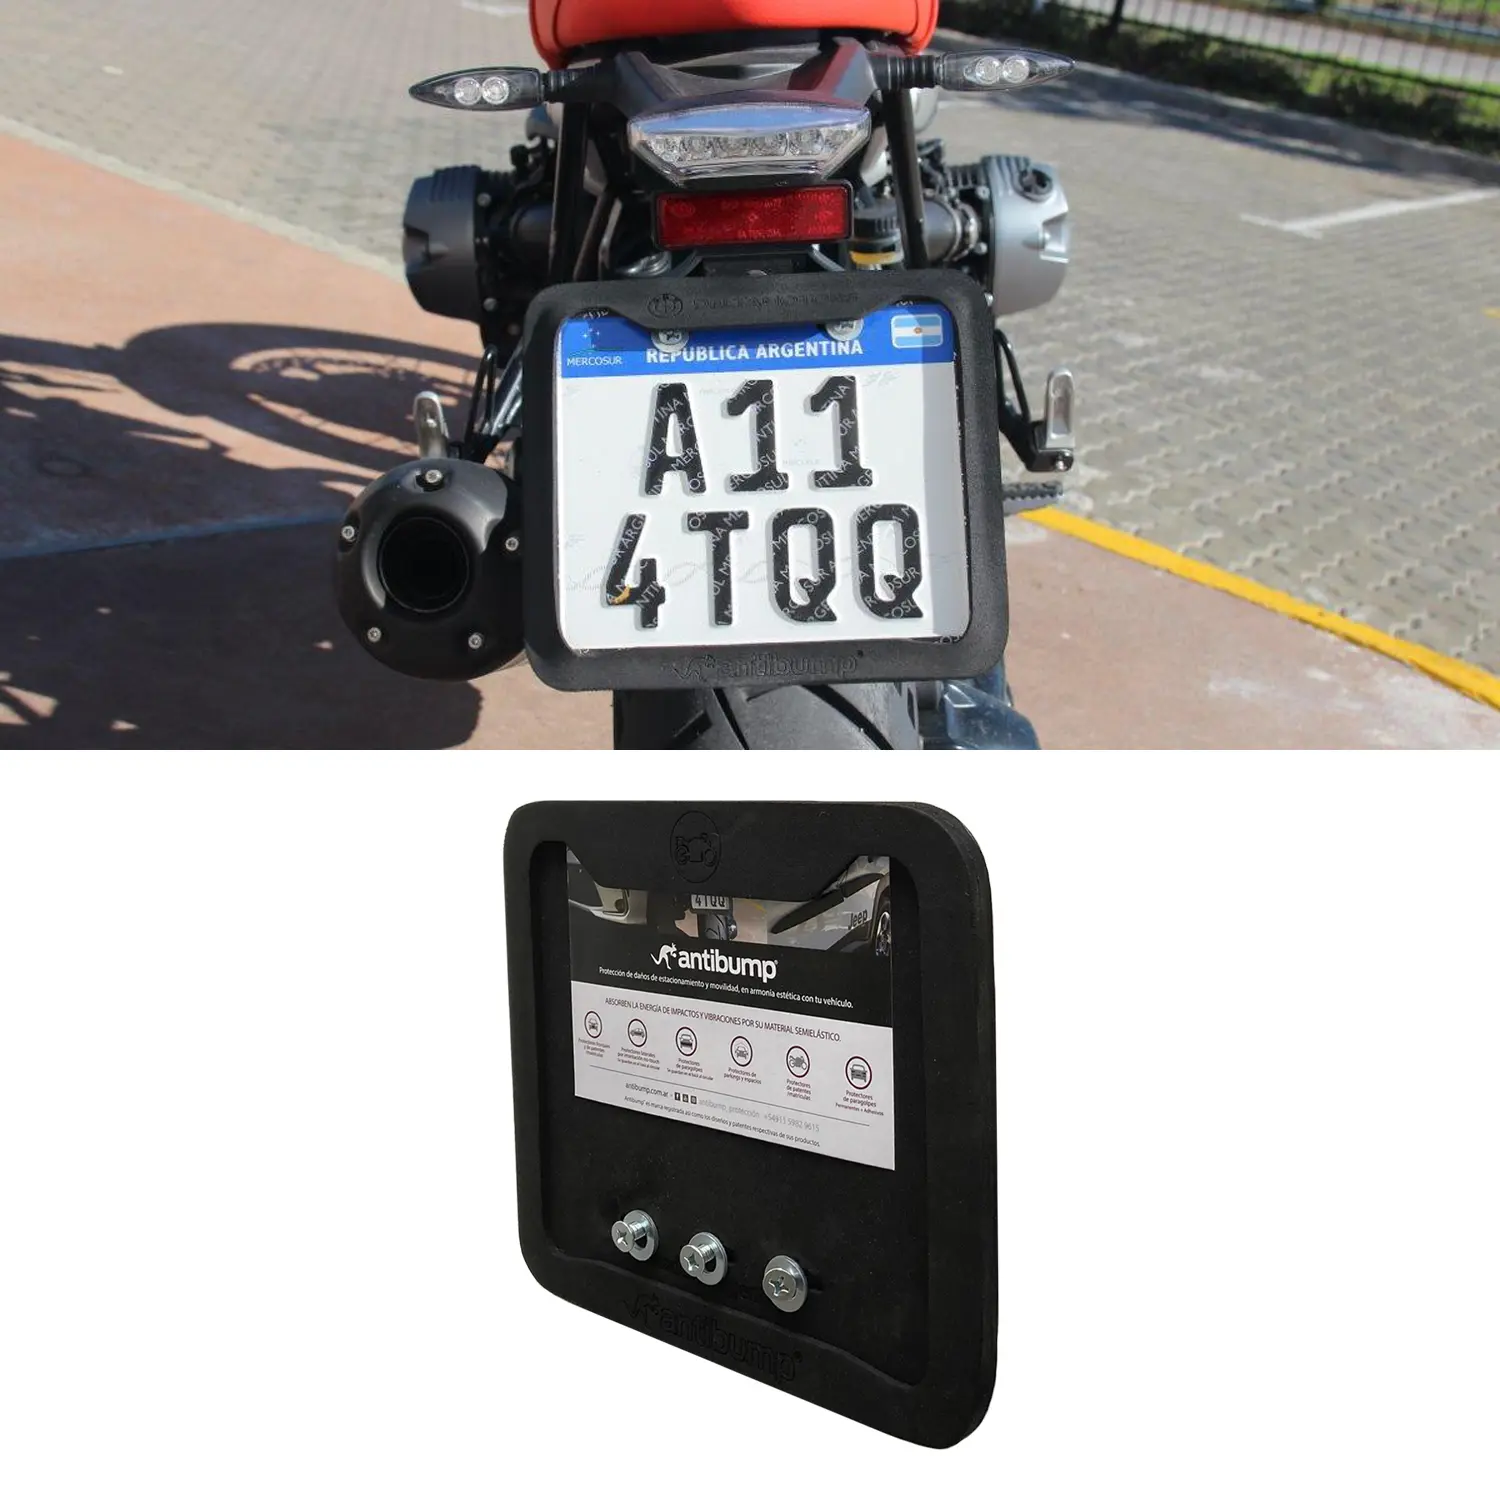 patentamiento de motos online - Cuánto tarda el patentamiento de una moto 0km